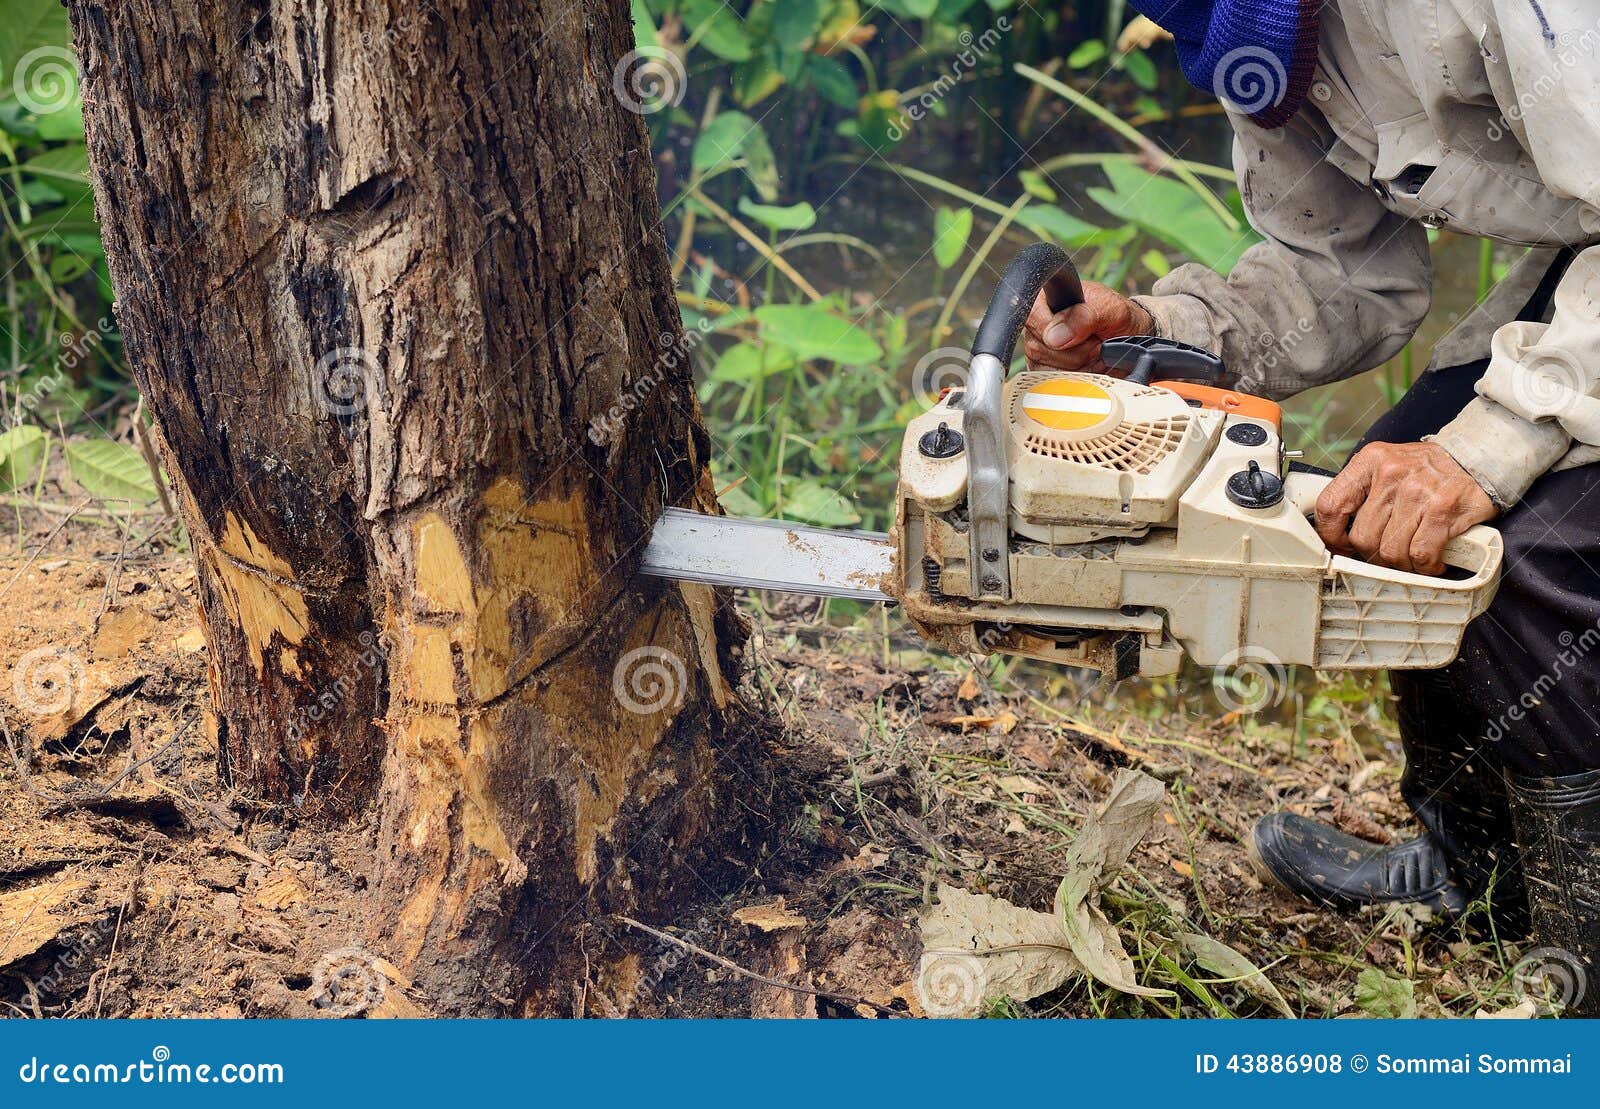 Un Hombre Corta Un árbol Con Una Motosierra. Poda De árboles. Foto